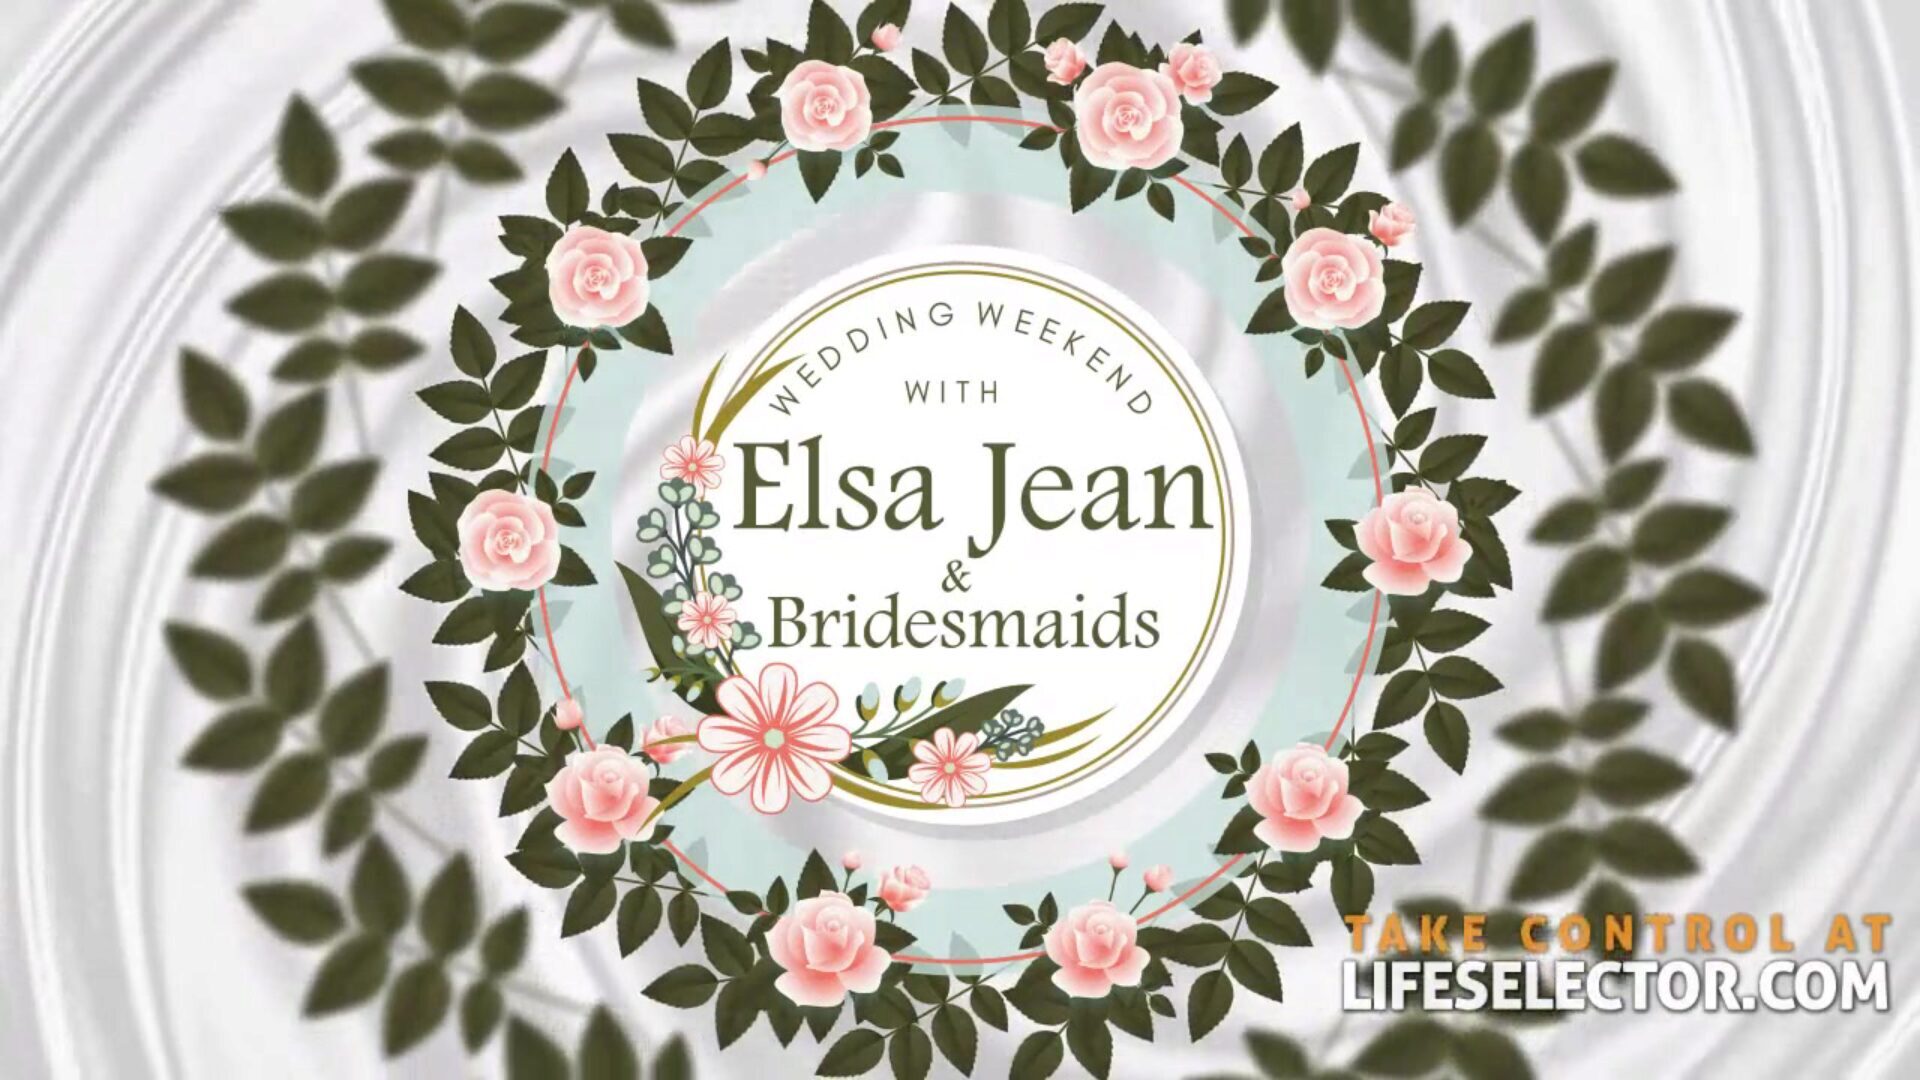 Σαββατοκύριακο γάμου με Elsa jean & παράνυμφοι